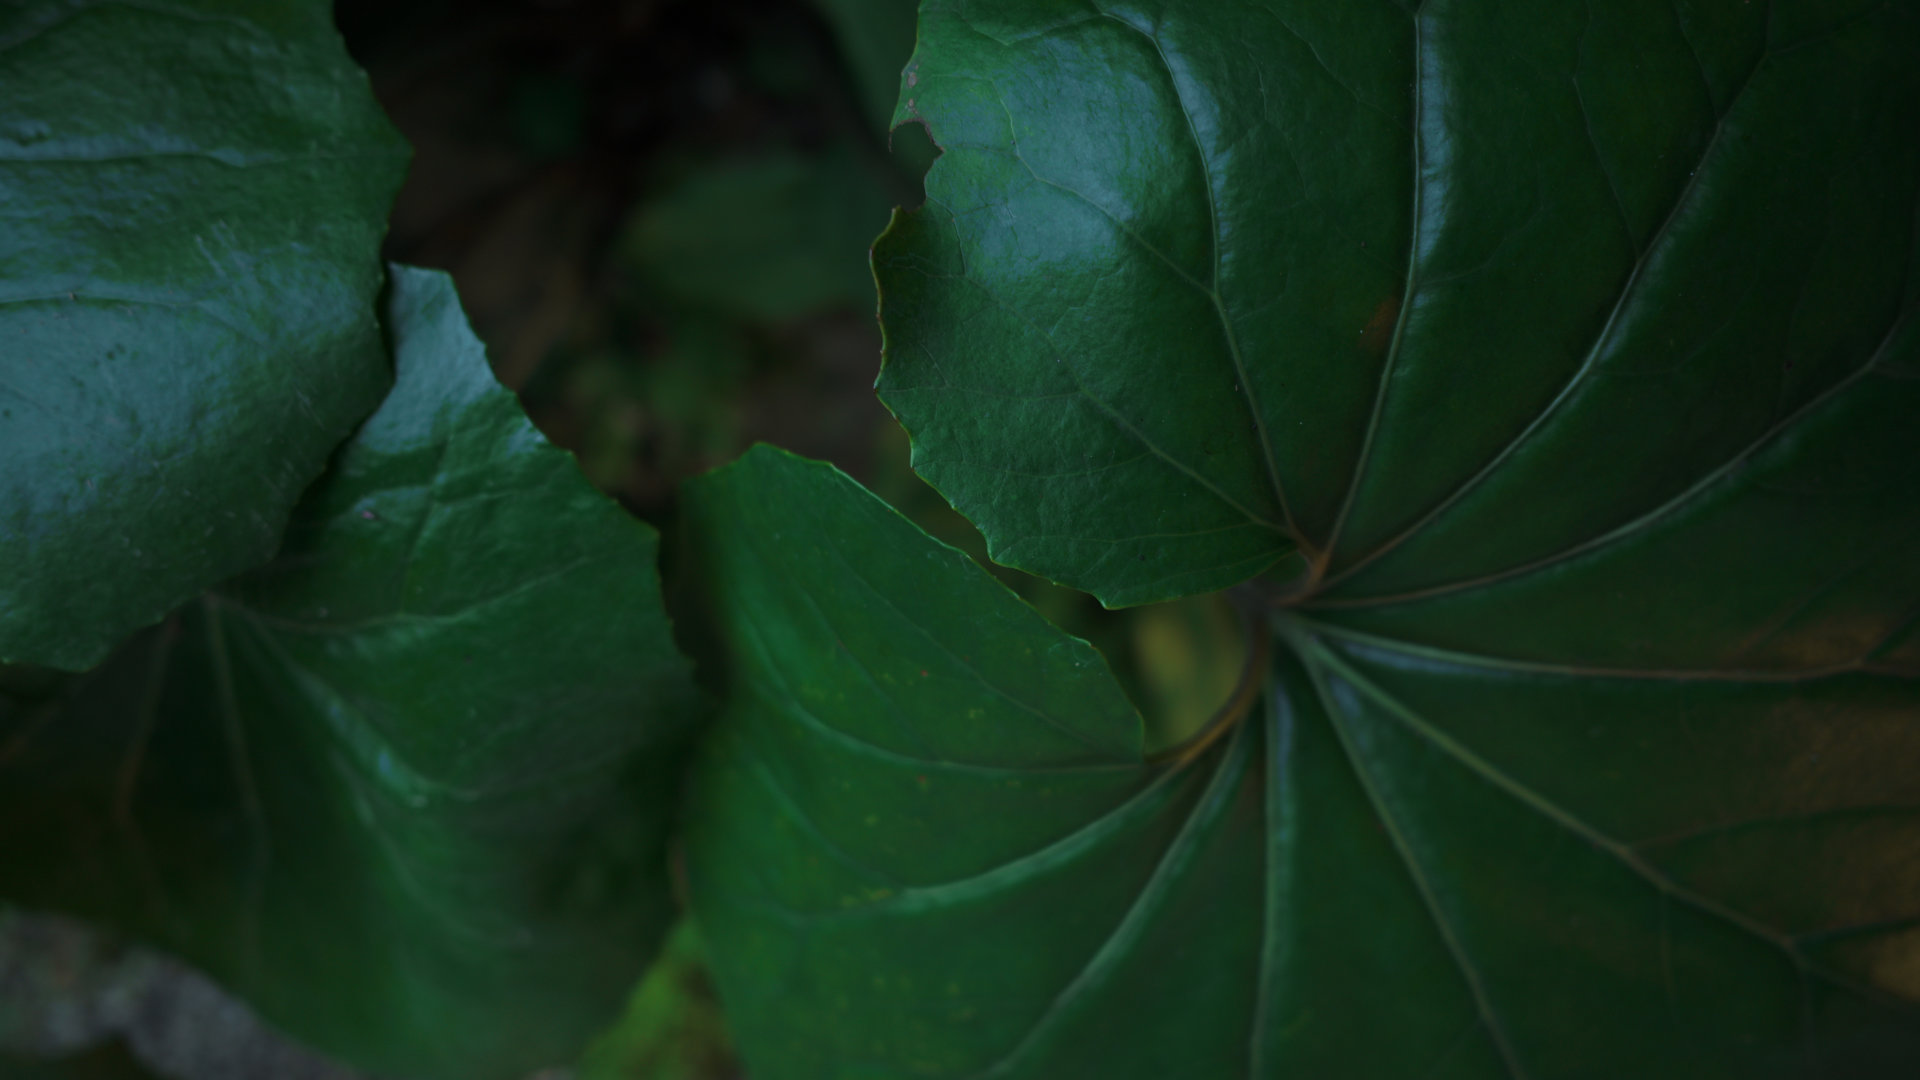 「庭先で育つフキの葉」カラーモード「パウダーブルー」Camera : SIGMA fp Lens : Sigma 24mm F3.5 DG DN Contemporary